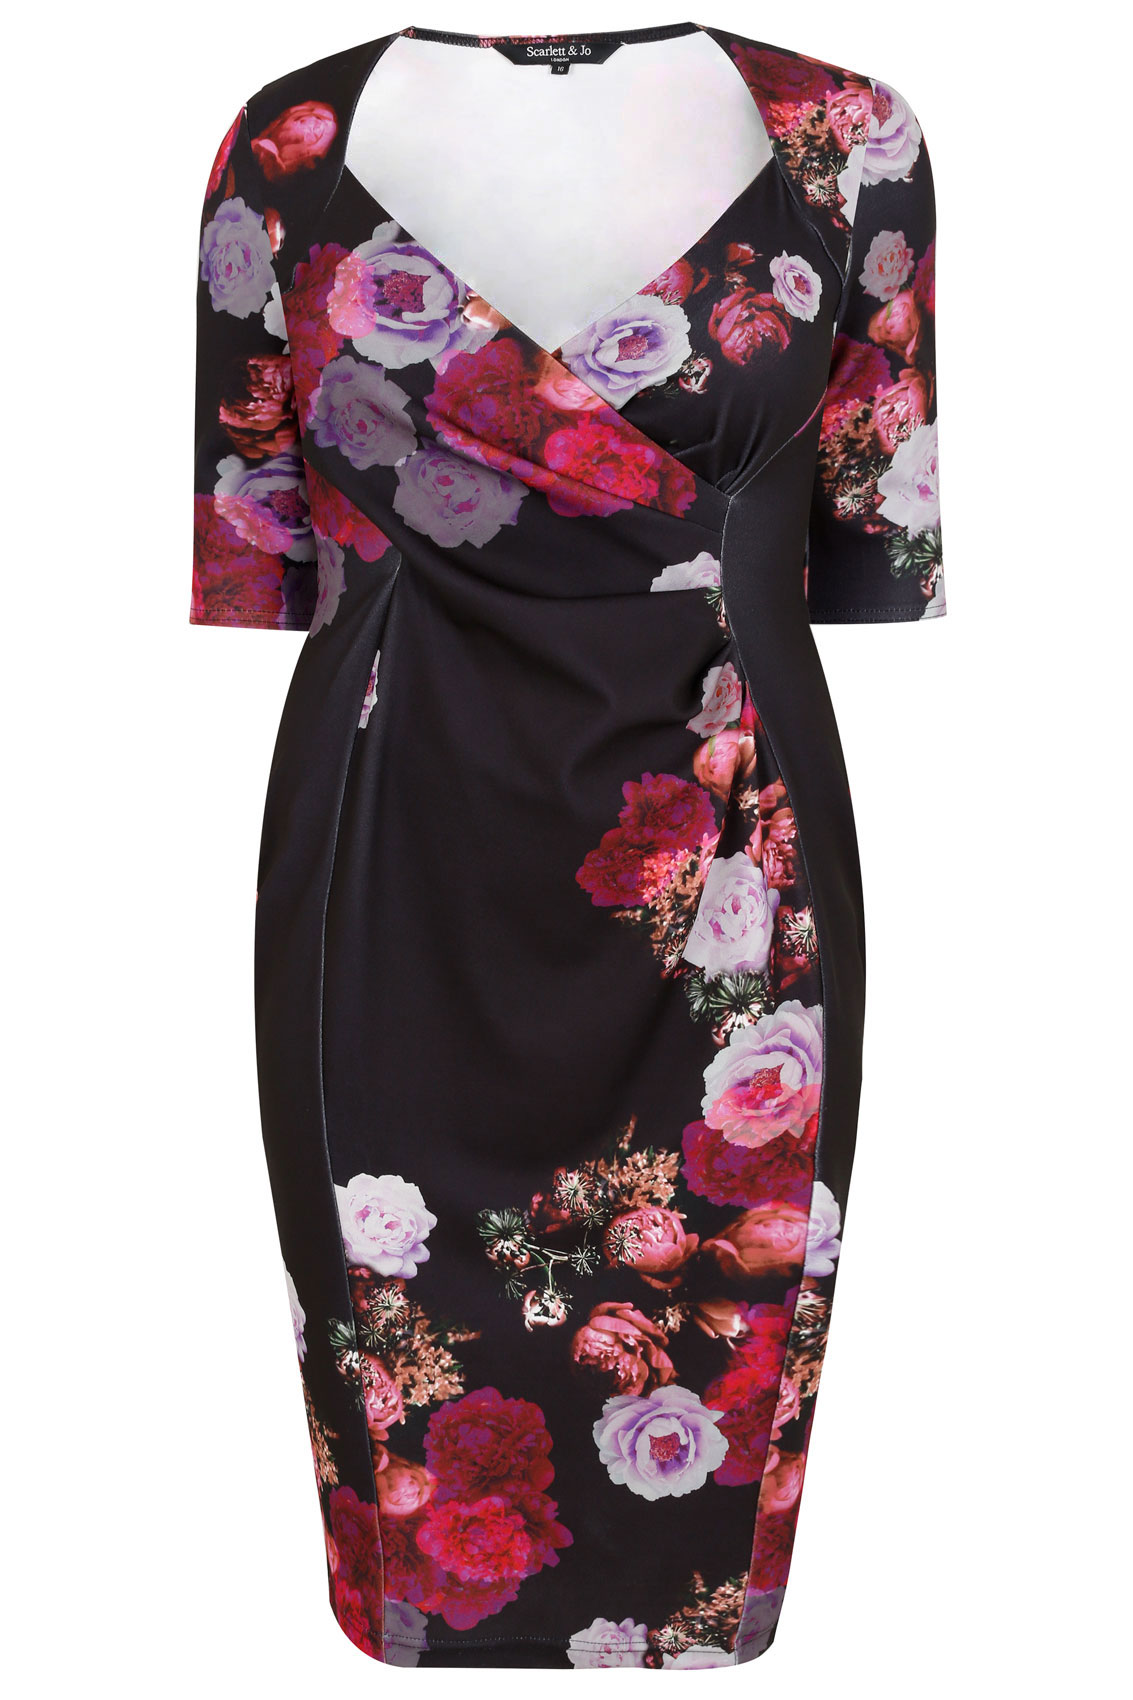 SCARLETT & JO Black & Multi Floral Print Wrap Bodycon Dress, Plus size ...